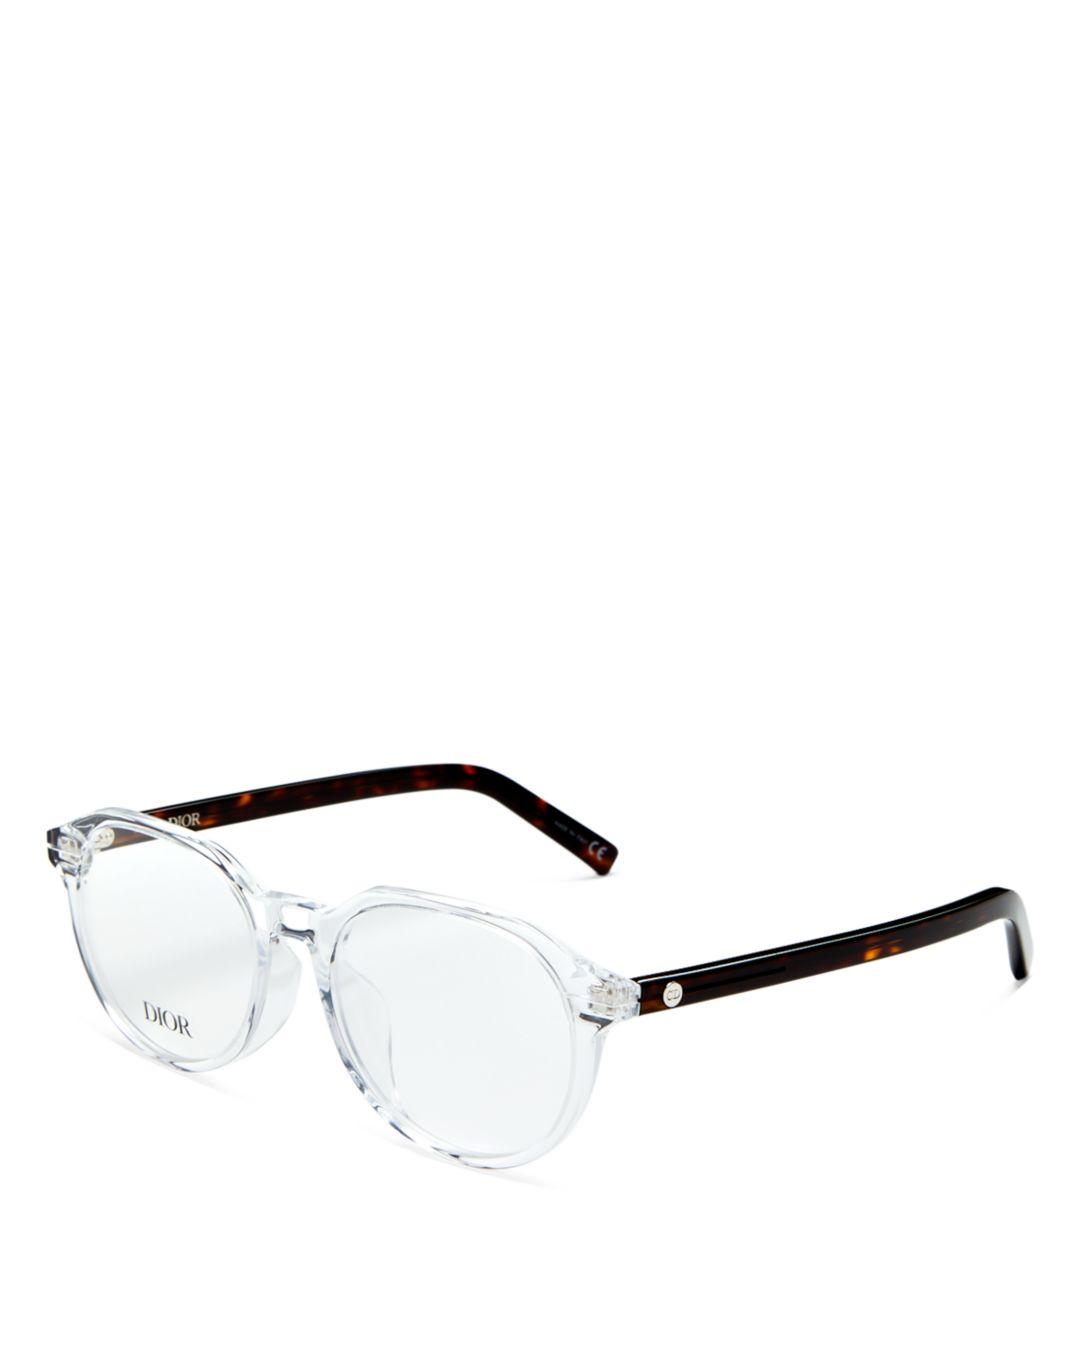 DiorSignature S7F Black Square Sunglasses  DIOR TH